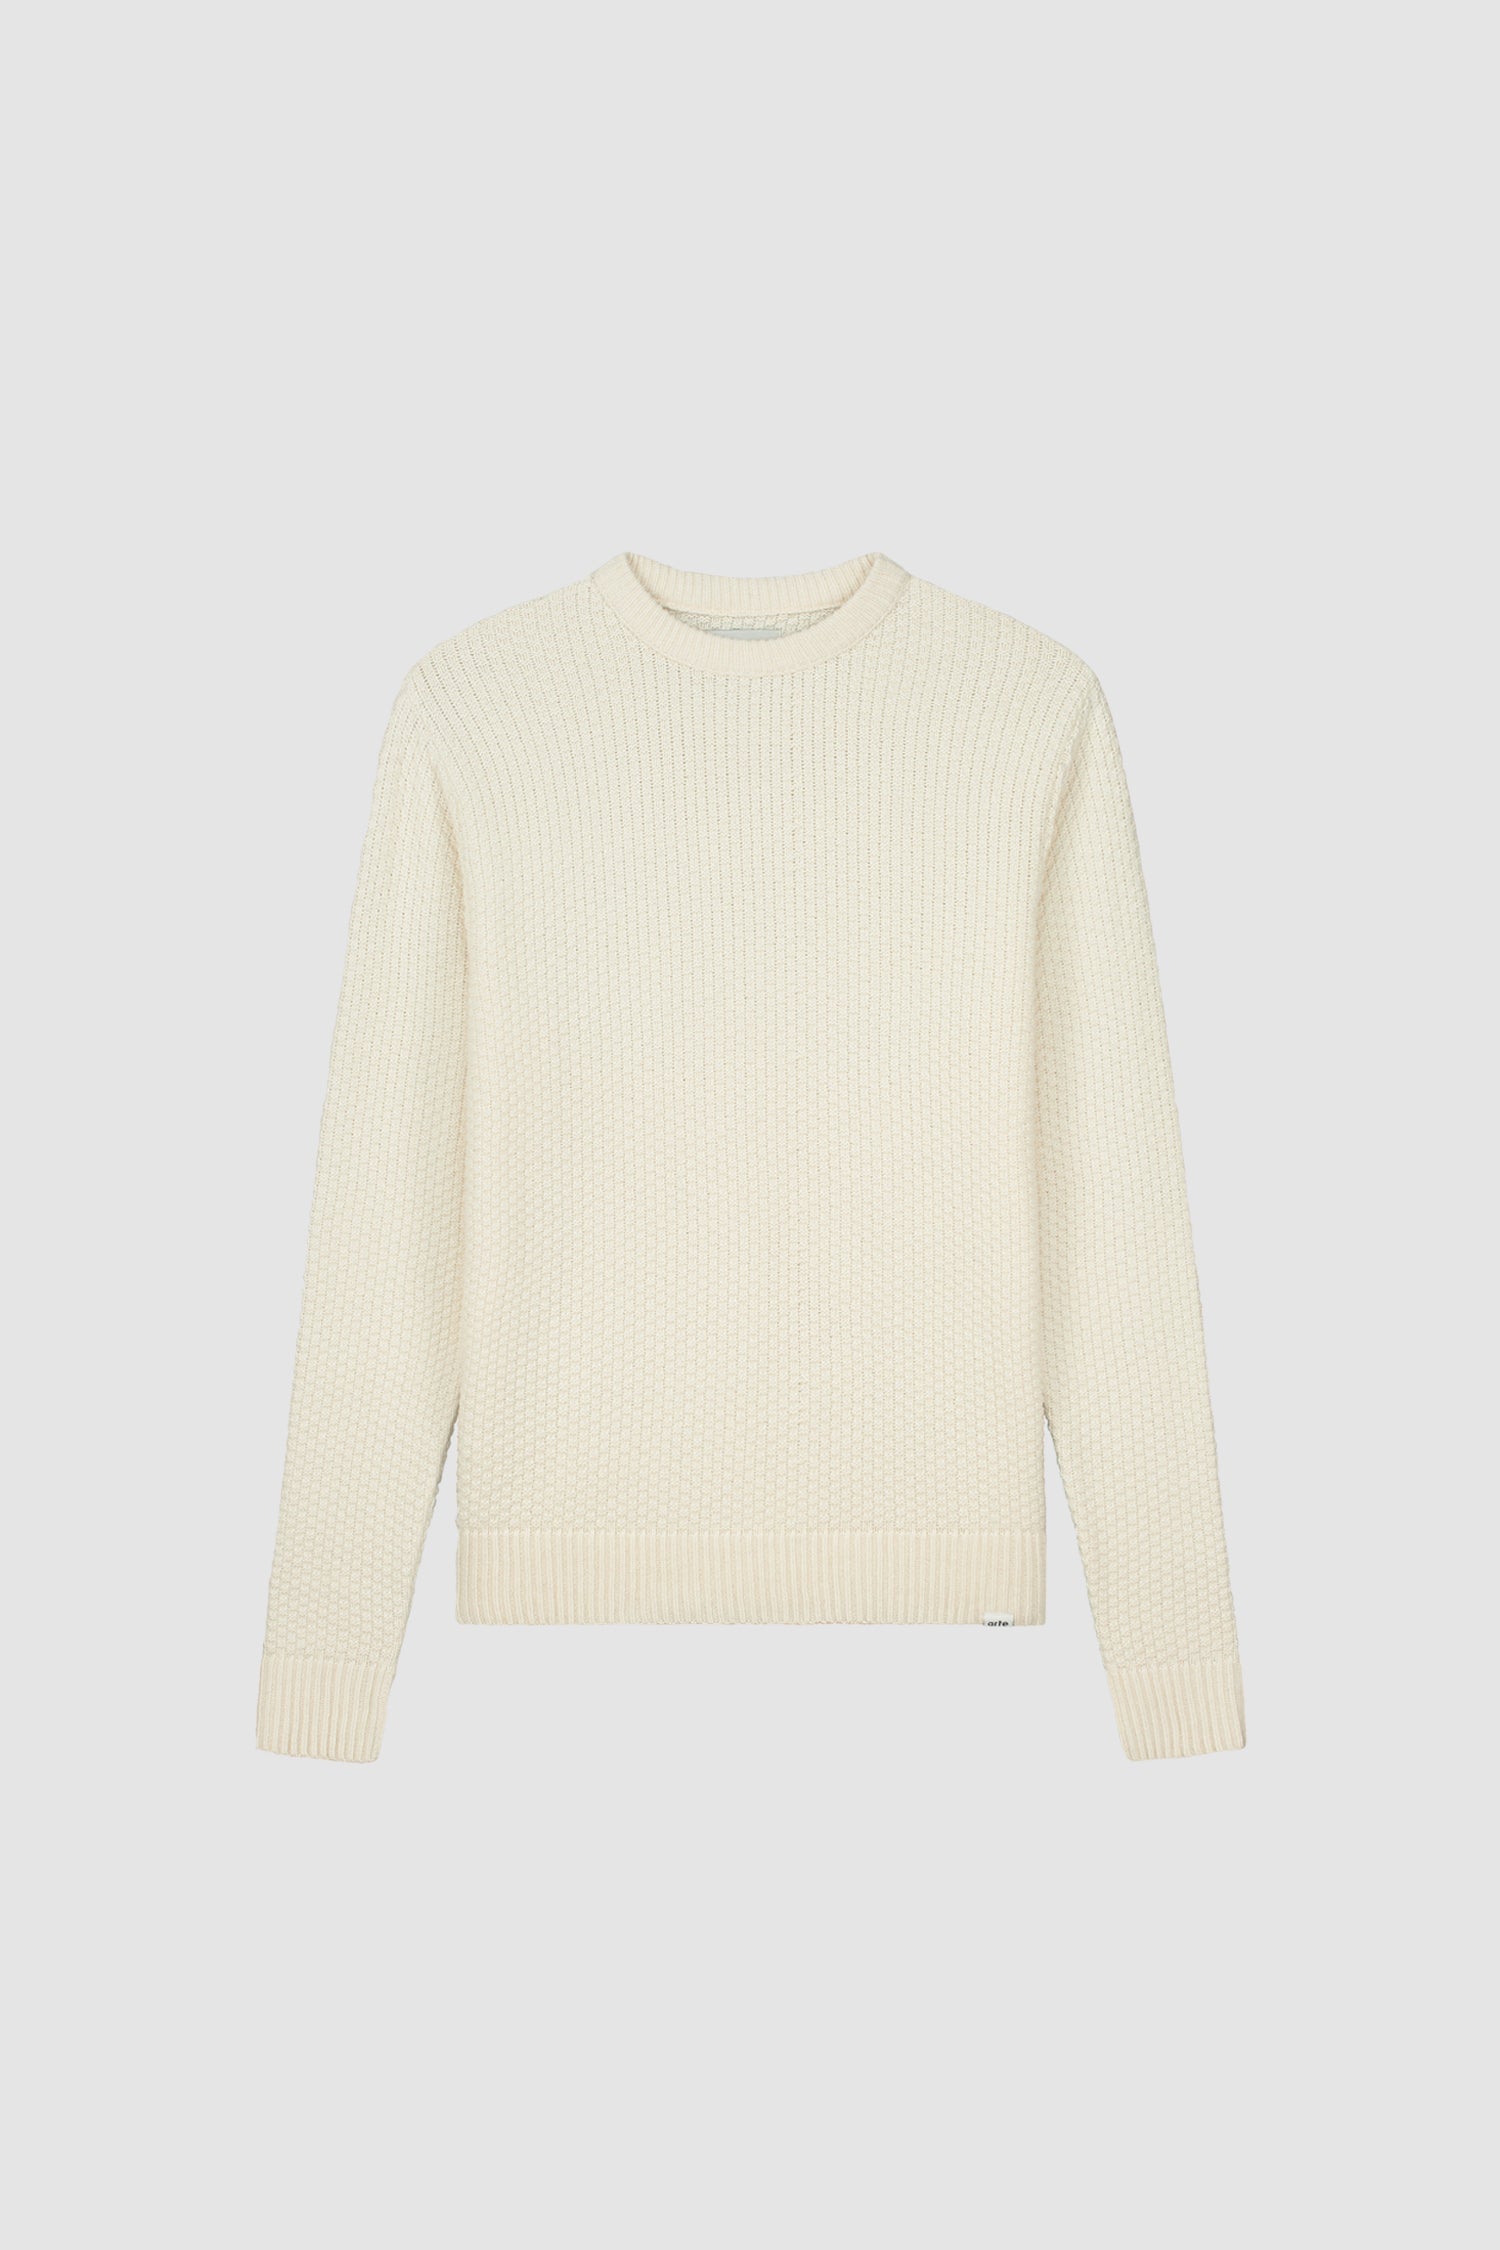 Kane Sweater - Cream